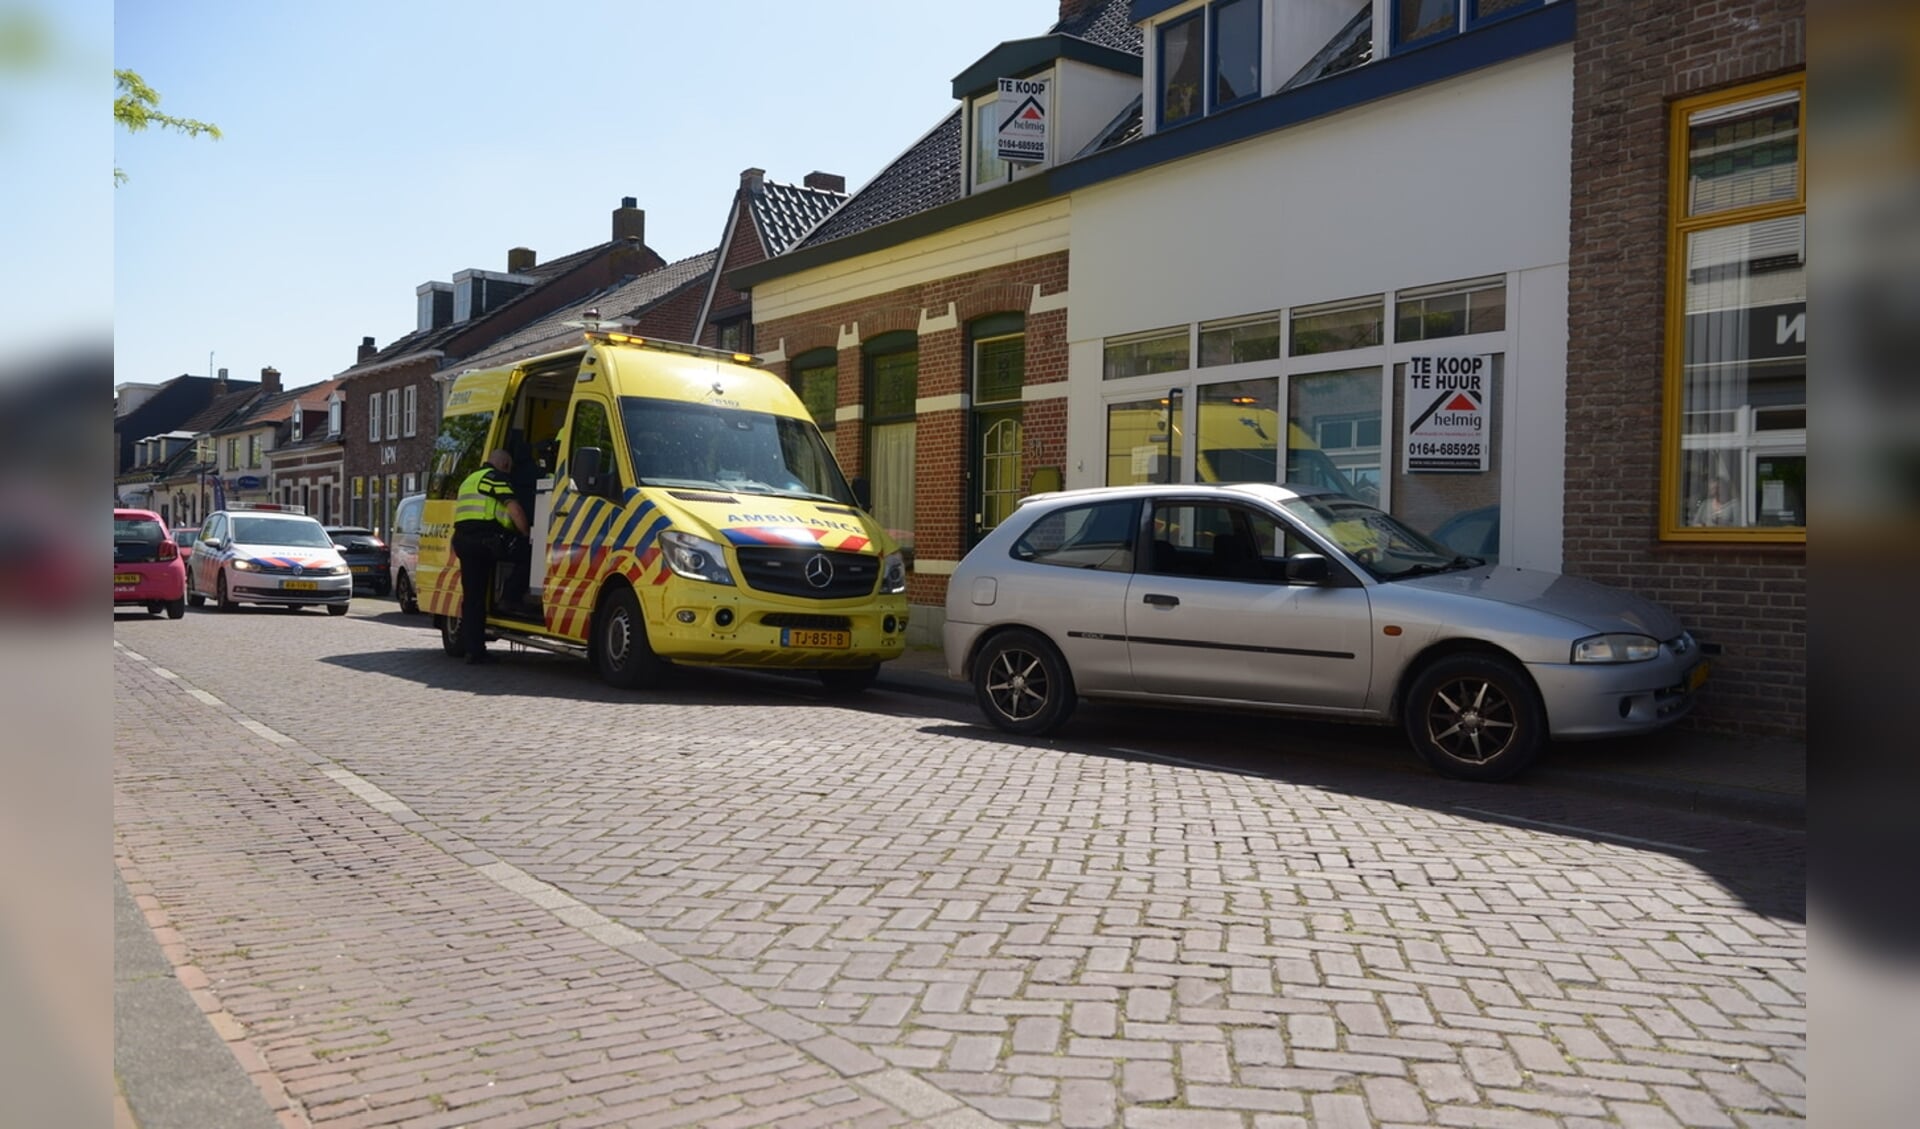 HALSTEREN - Een personenauto is zaterdagmiddag tegen de gevel van een woning beland aan de Dorpstraat in Halsteren. Het ongeval gebeurde iets na 14.30 uur net na de kruisingen met het Lindenlaantje.